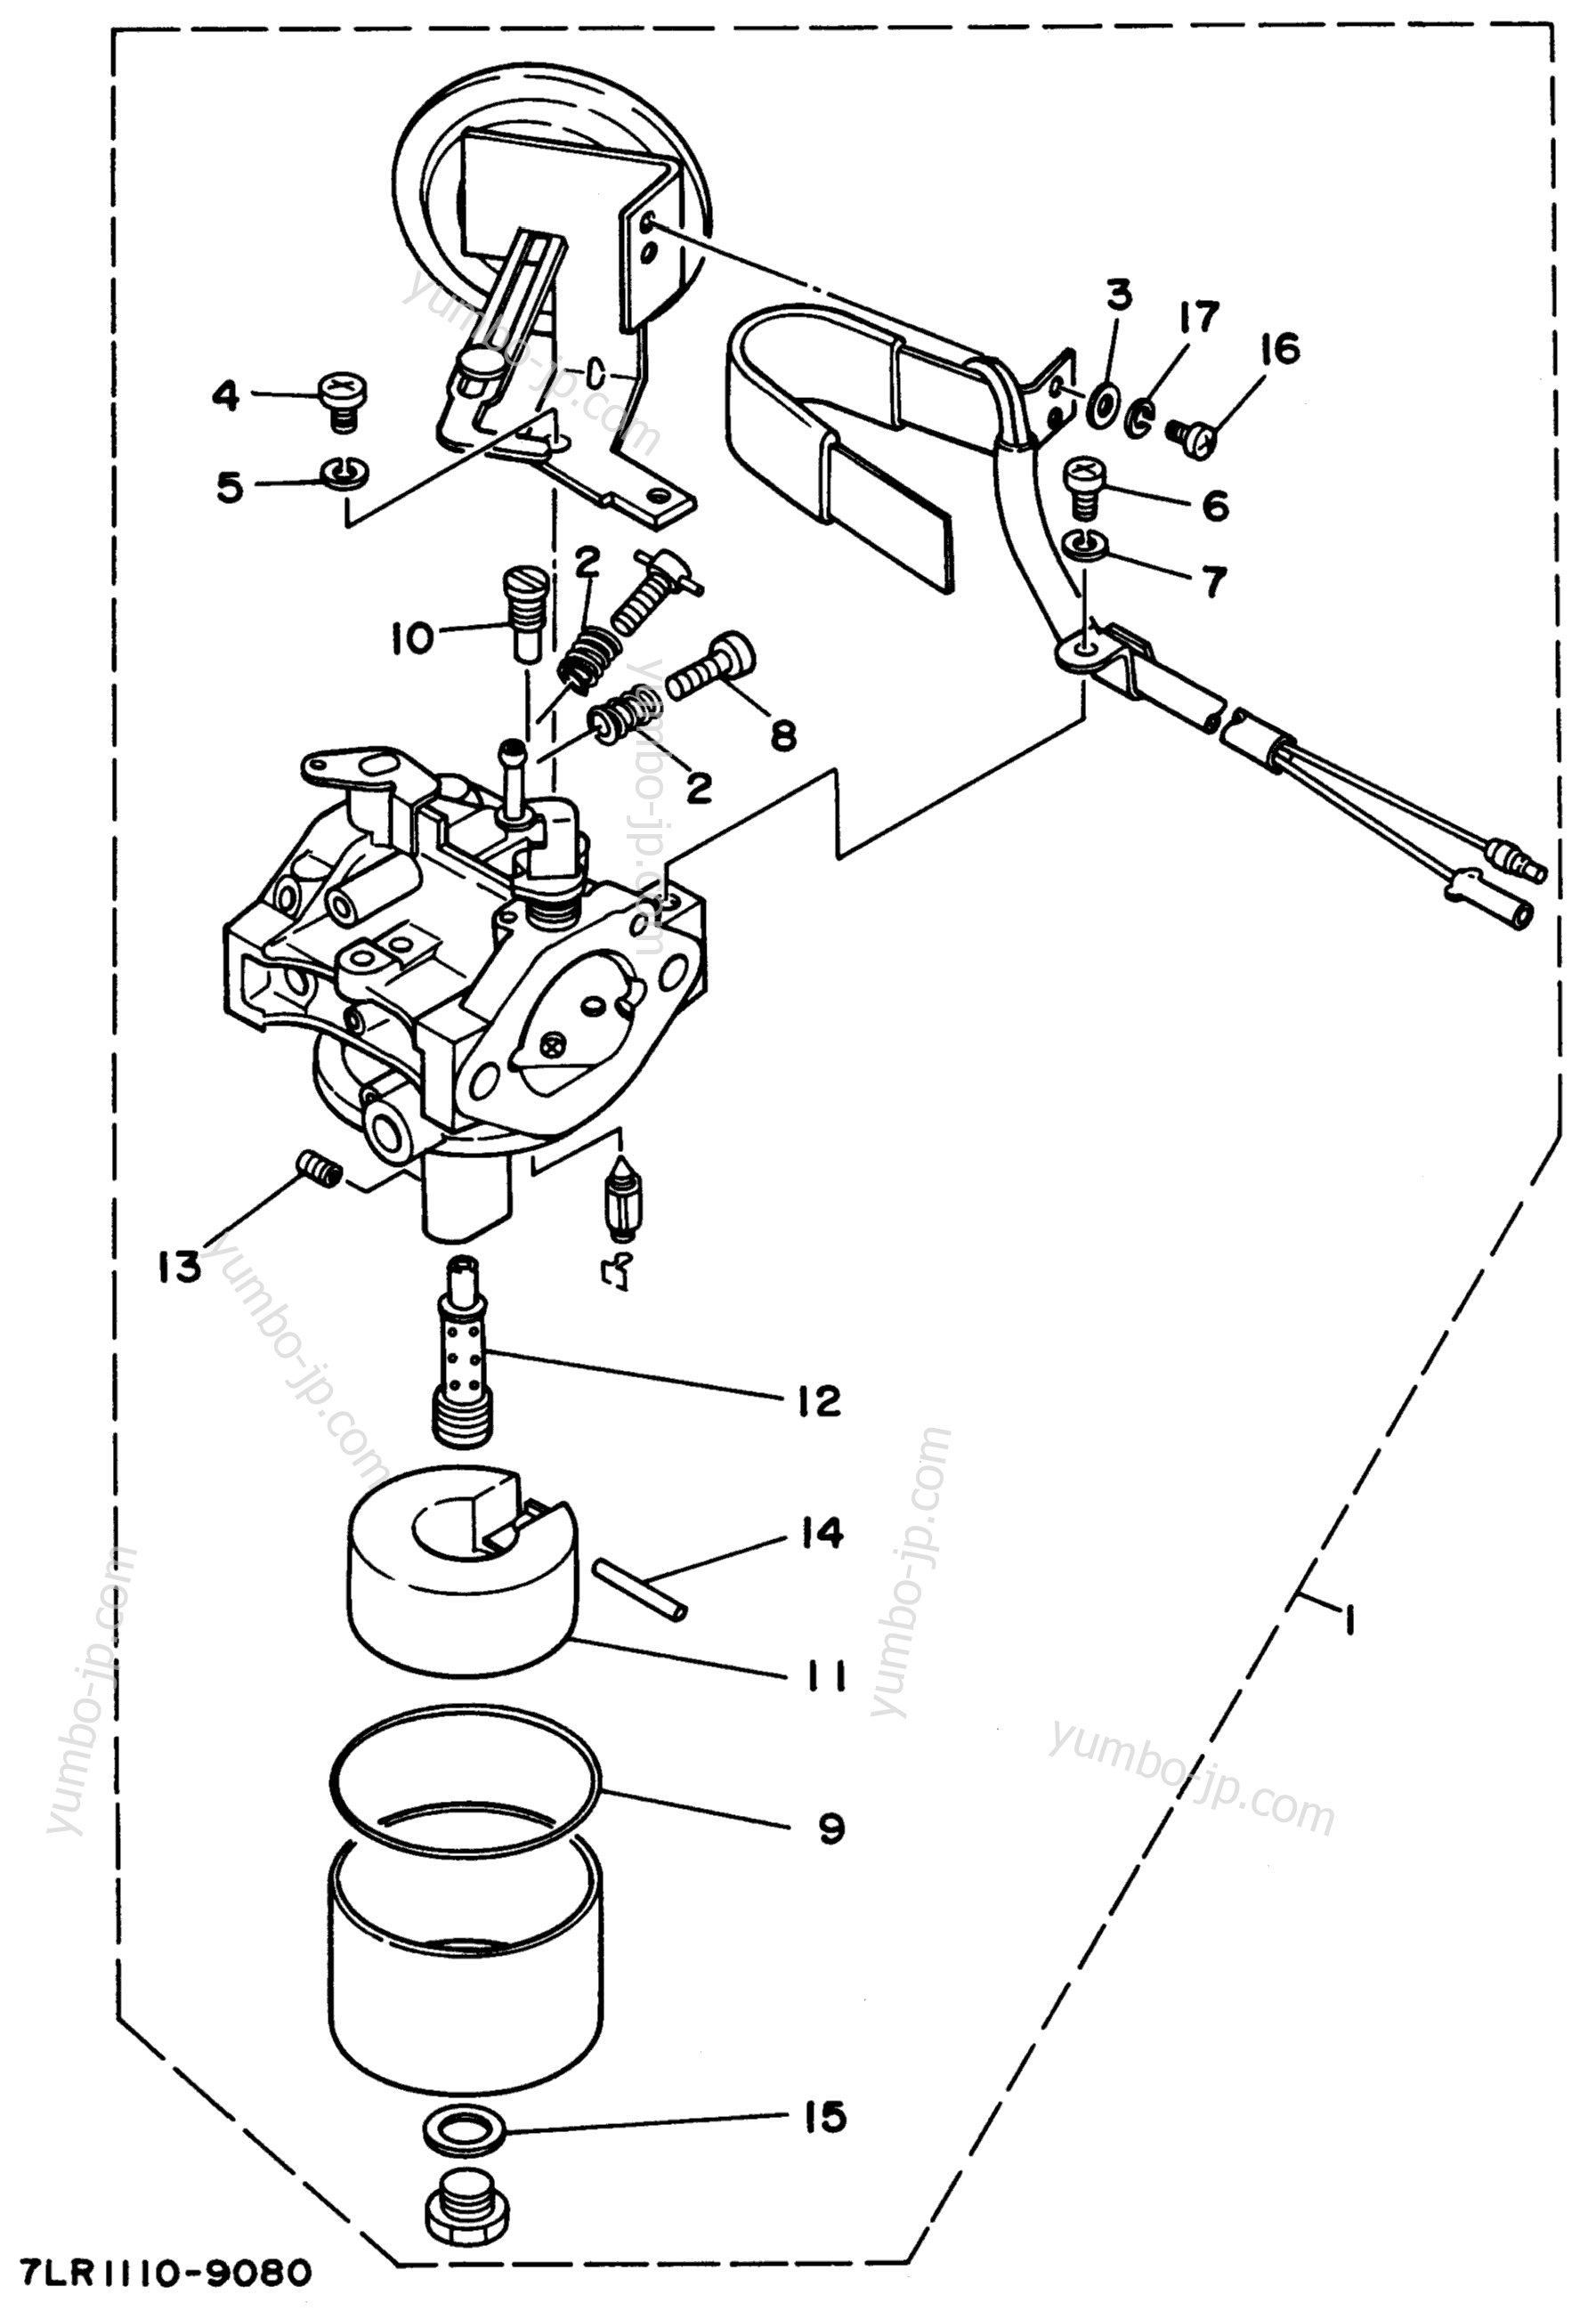 Carburetor 2 (Auto Choke) для генераторов YAMAHA EF3800 